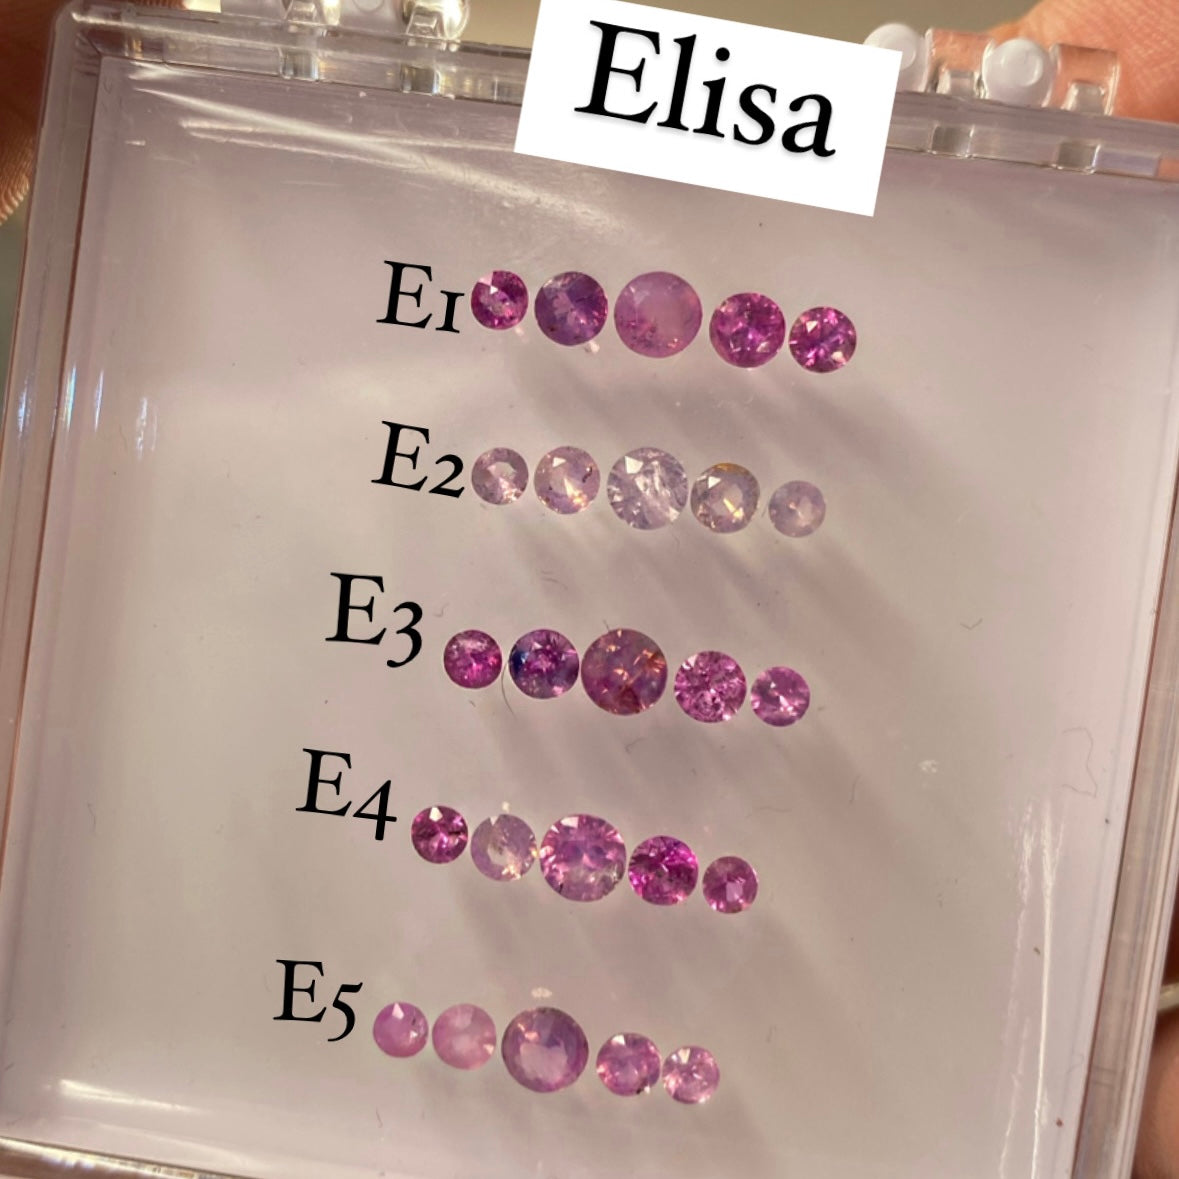 E1 - ANTICIPO/APARTADO Zafiros rosas opalescentes (anillo tipo Elisa) precio total 9,750 pesos